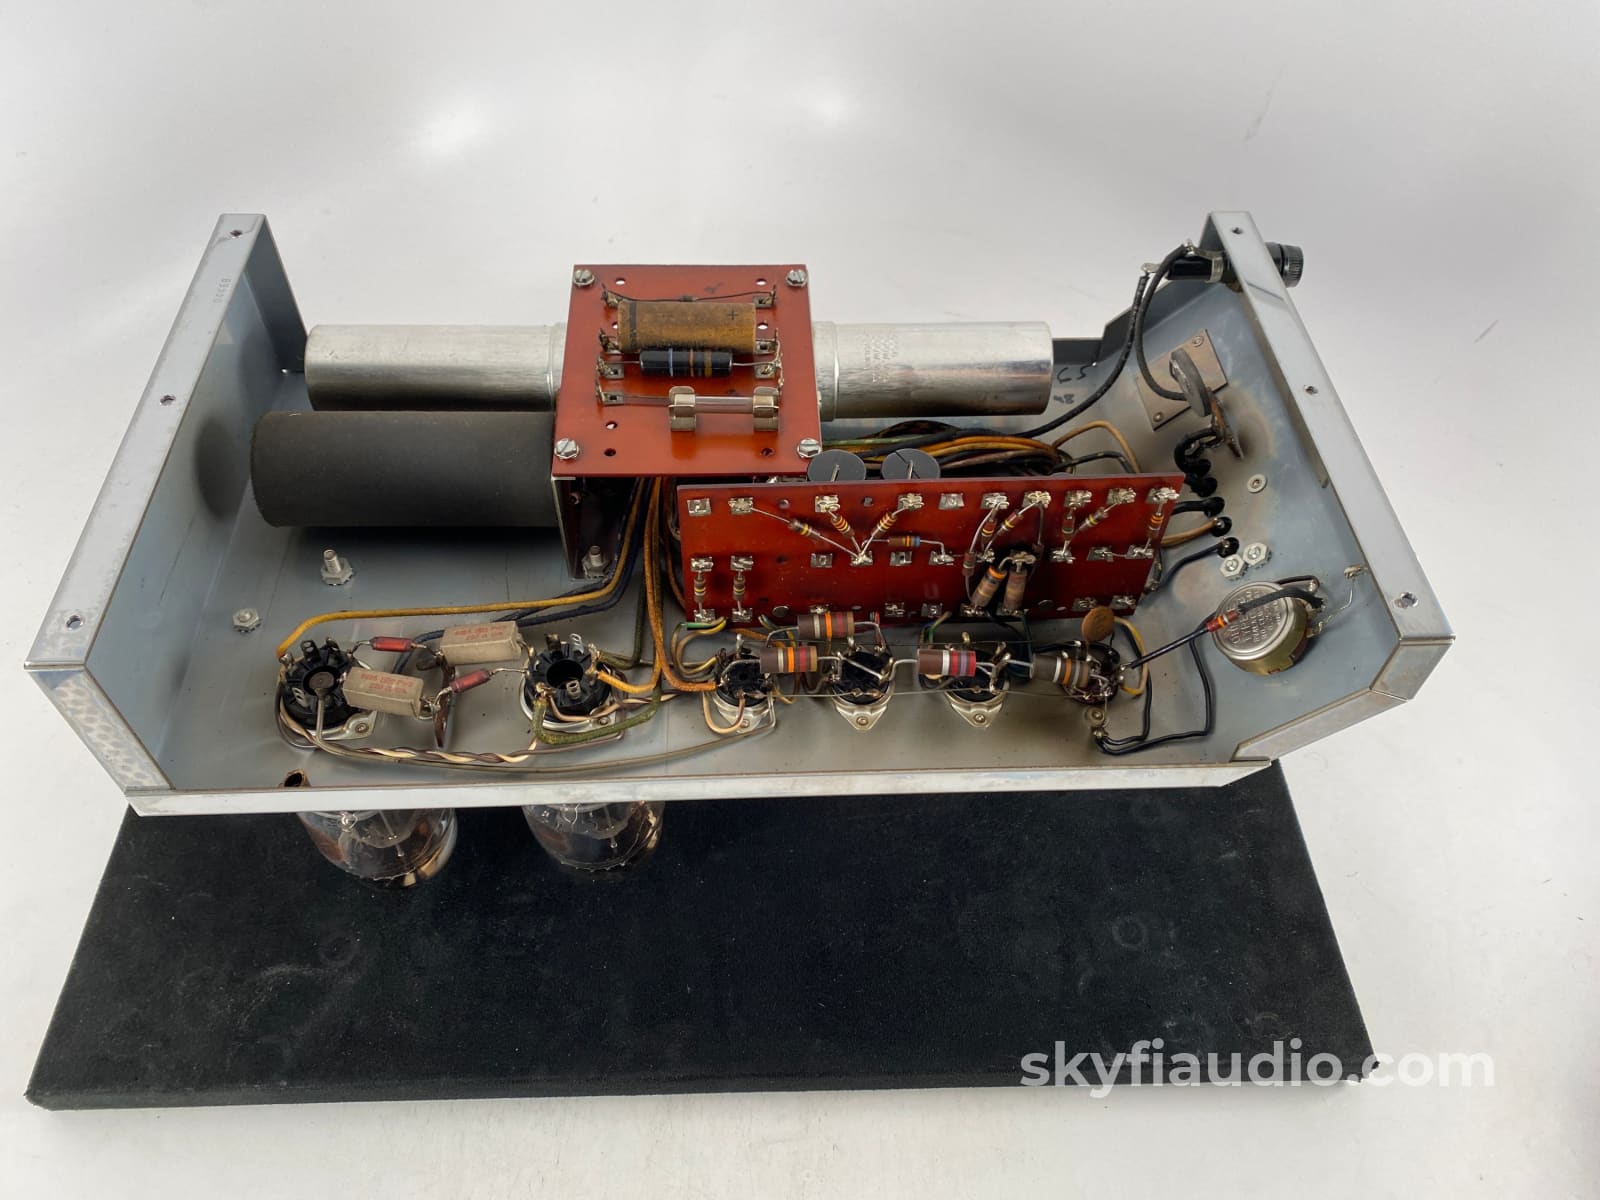 Mcintosh A-129 Mono Tube Amplifier - Super Rare All Original And Unrestored